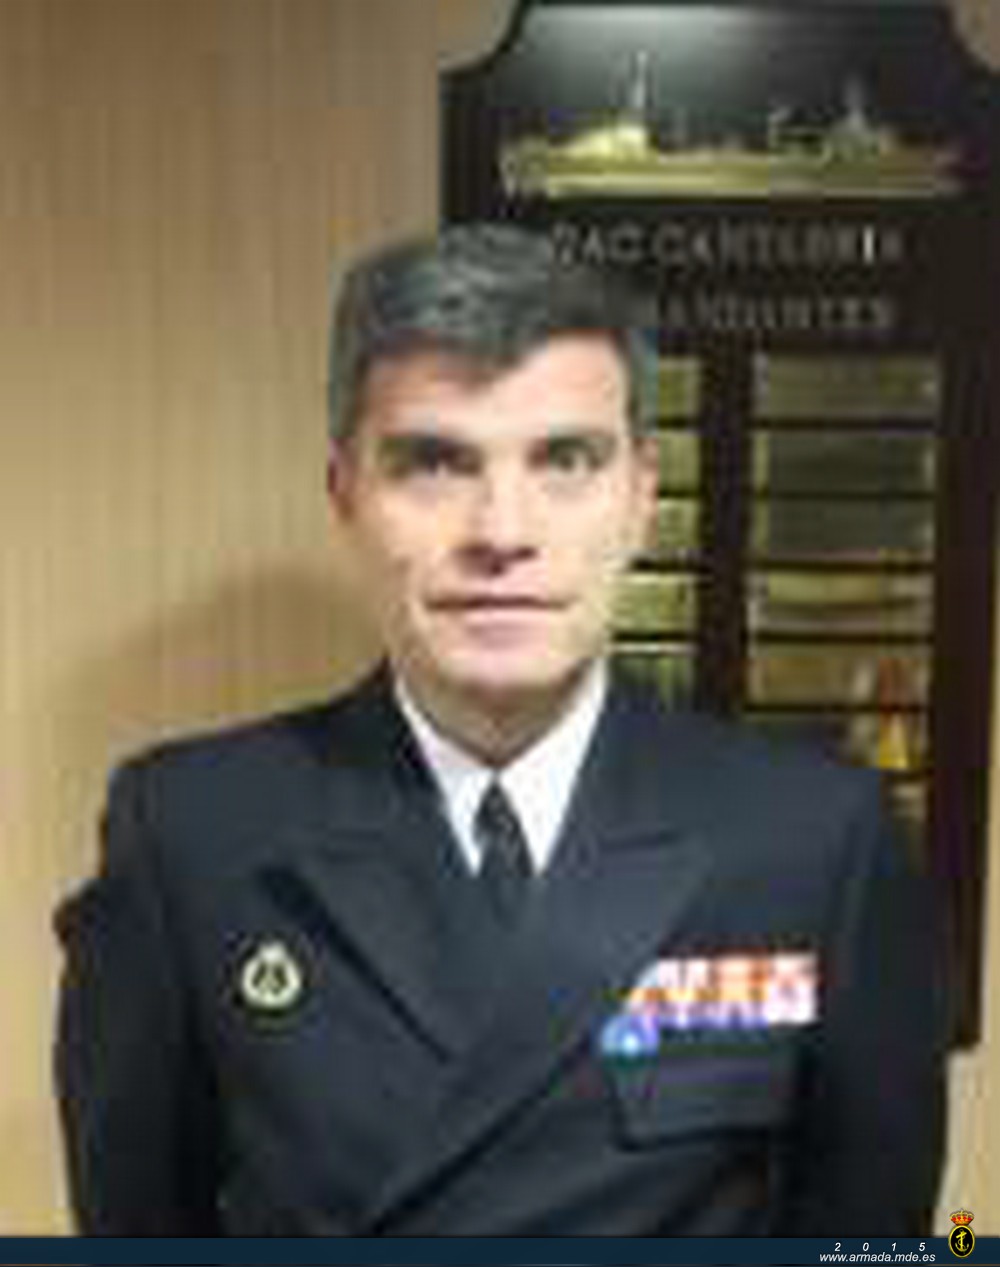 Comandante del buque "CANTABRIA" Capitán de Fragata
Francisco Javier Roca Rivero
